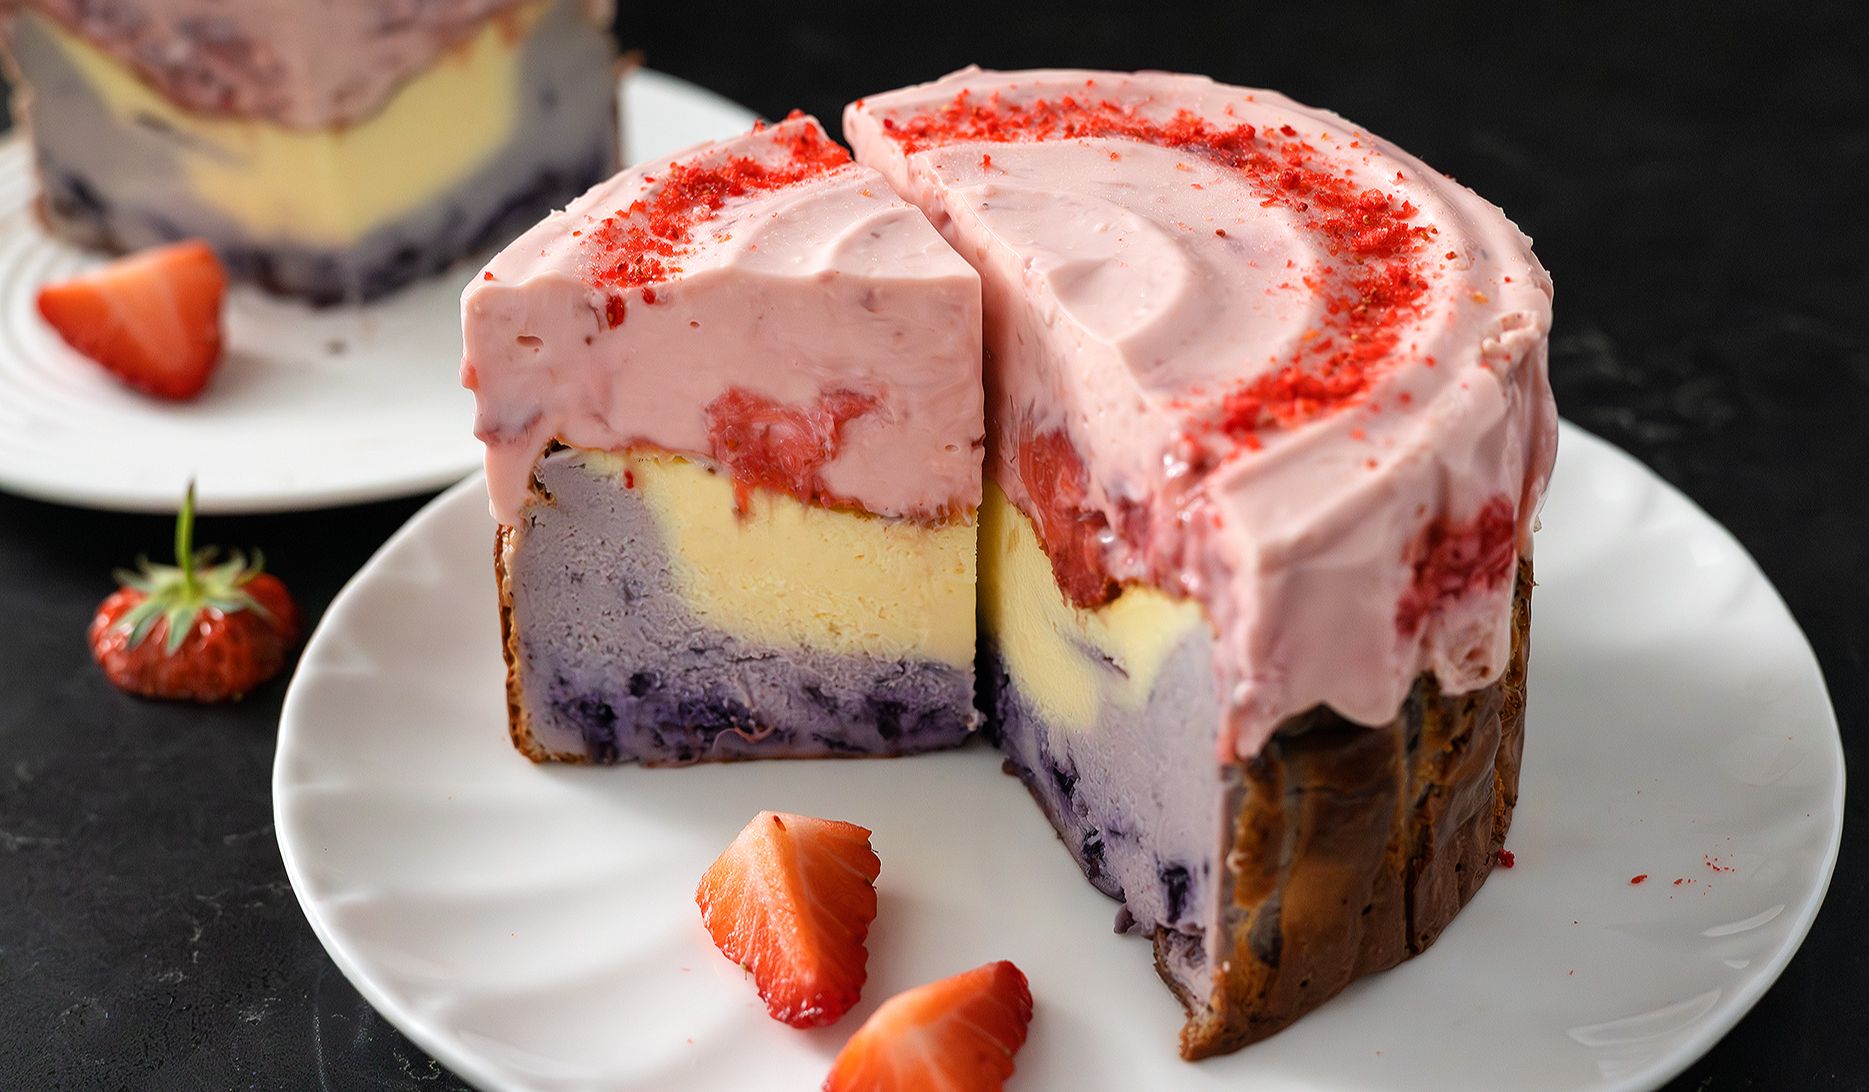 美食记录 | 多重口感 蓝莓巴斯克 草莓乳酪芝士蛋糕